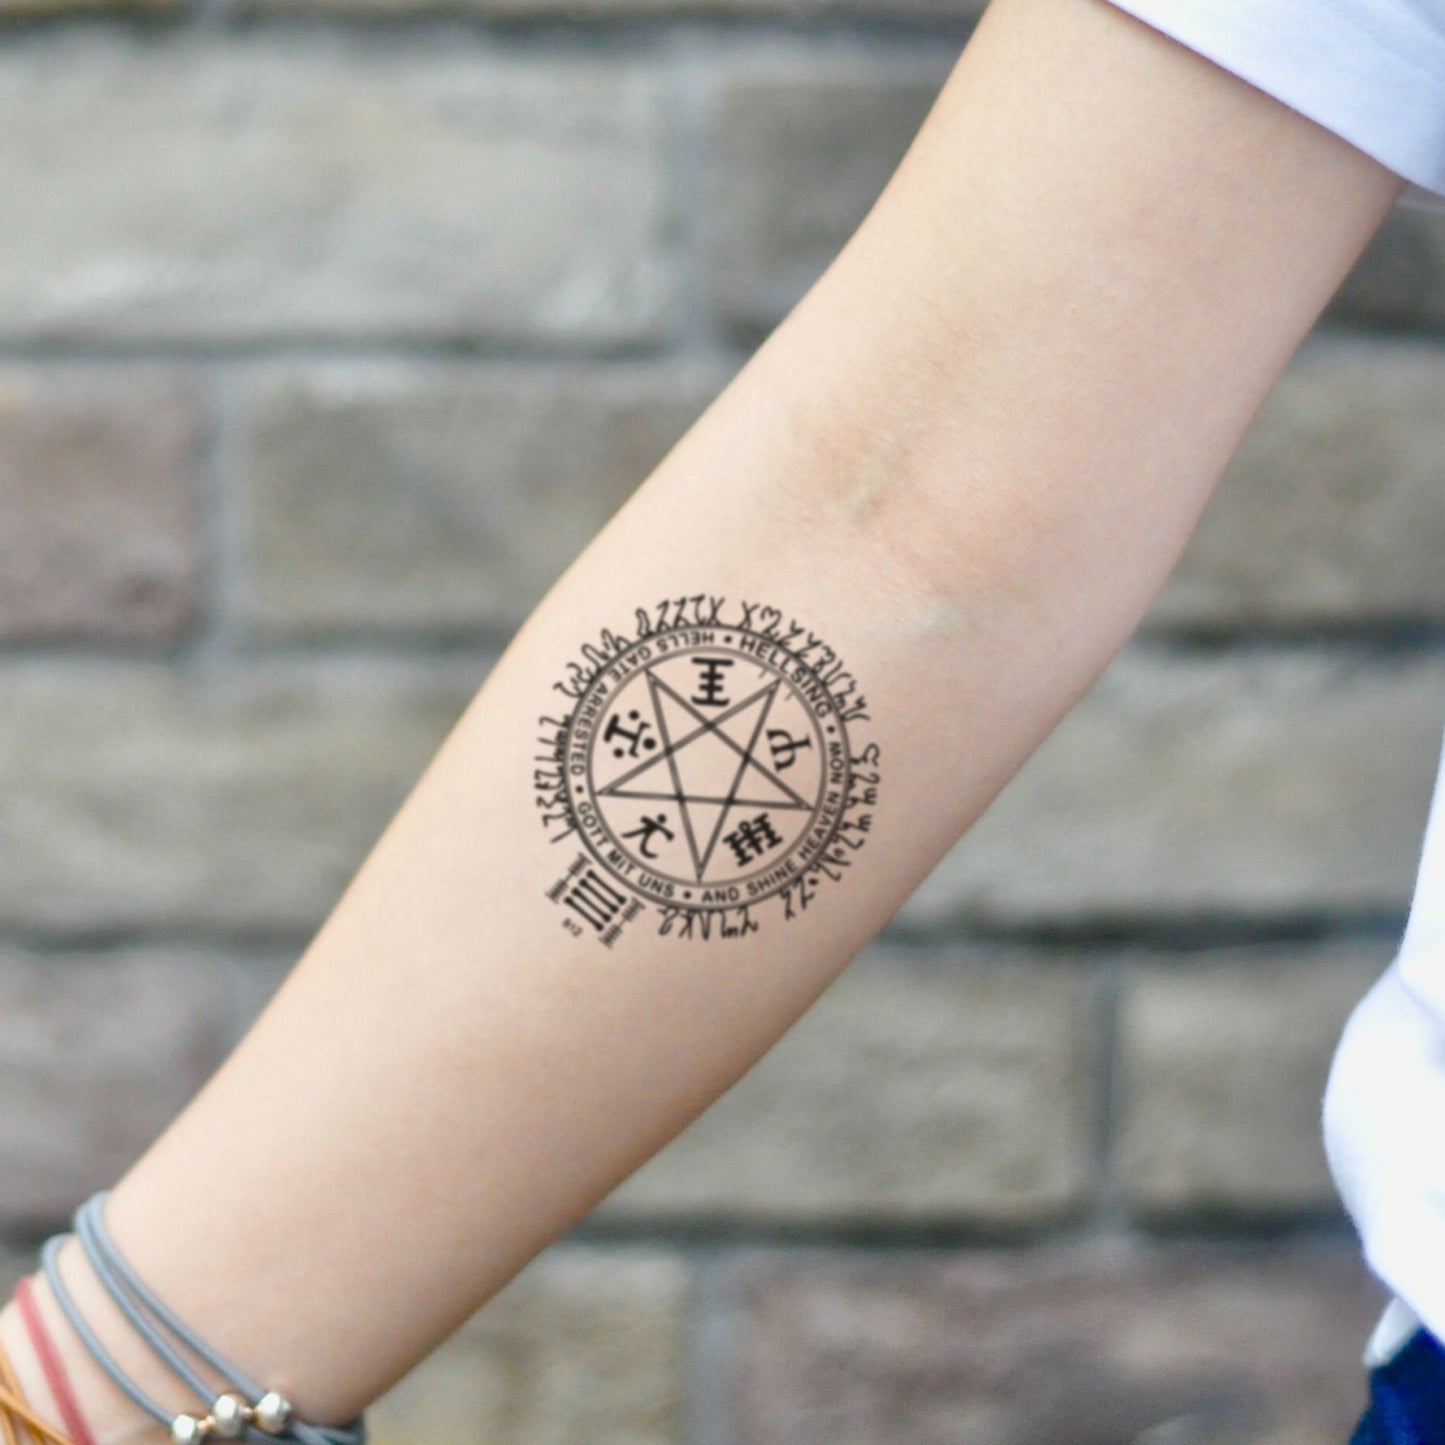 fake small hellsing alucard symbol illustrative temporary tattoo sticker design idea on inner arm